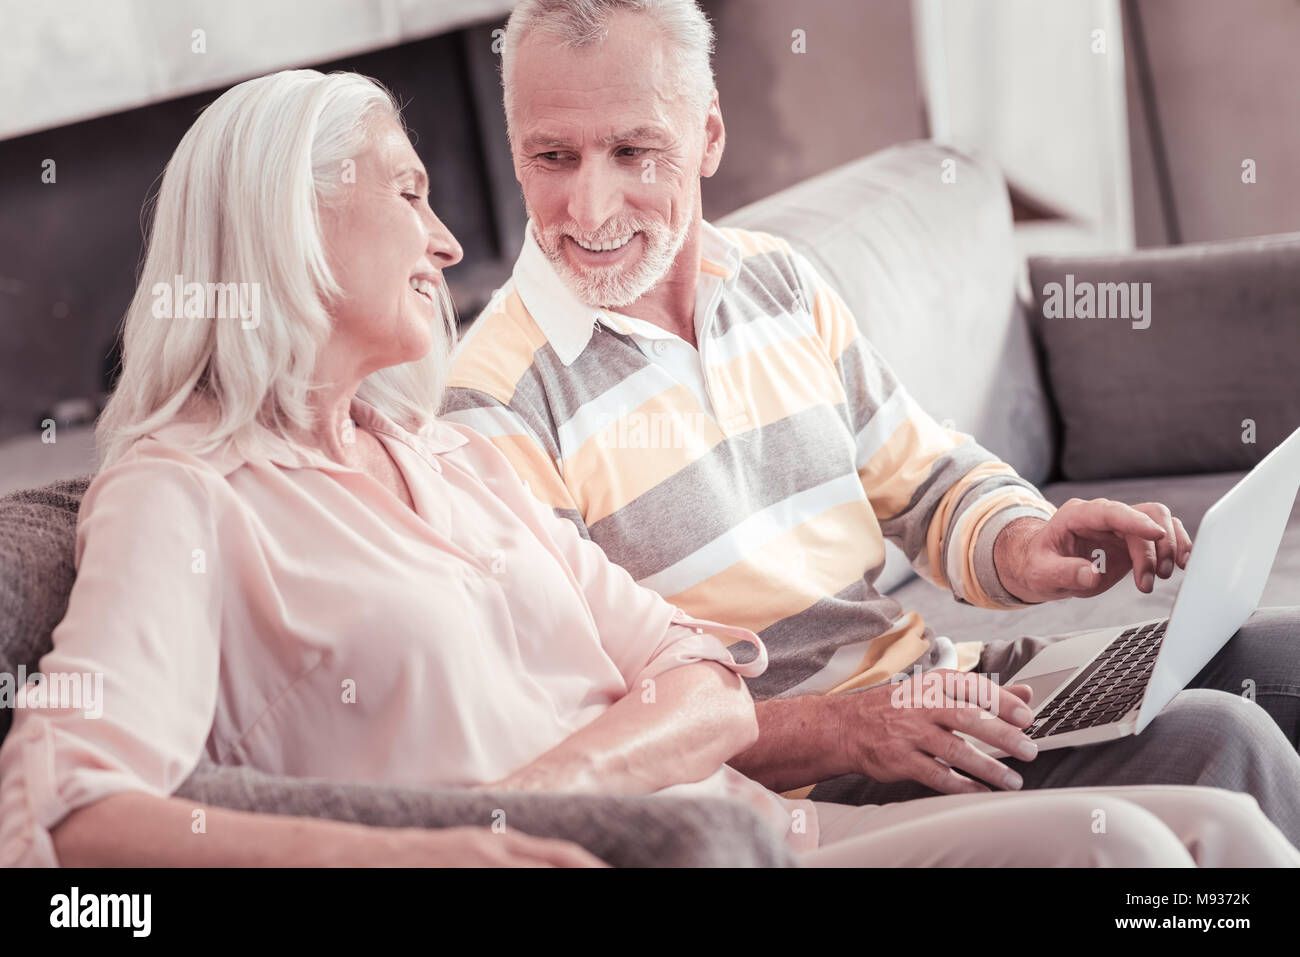 Schön im Alter von Paar sitzen und miteinander kommunizieren. Stockfoto